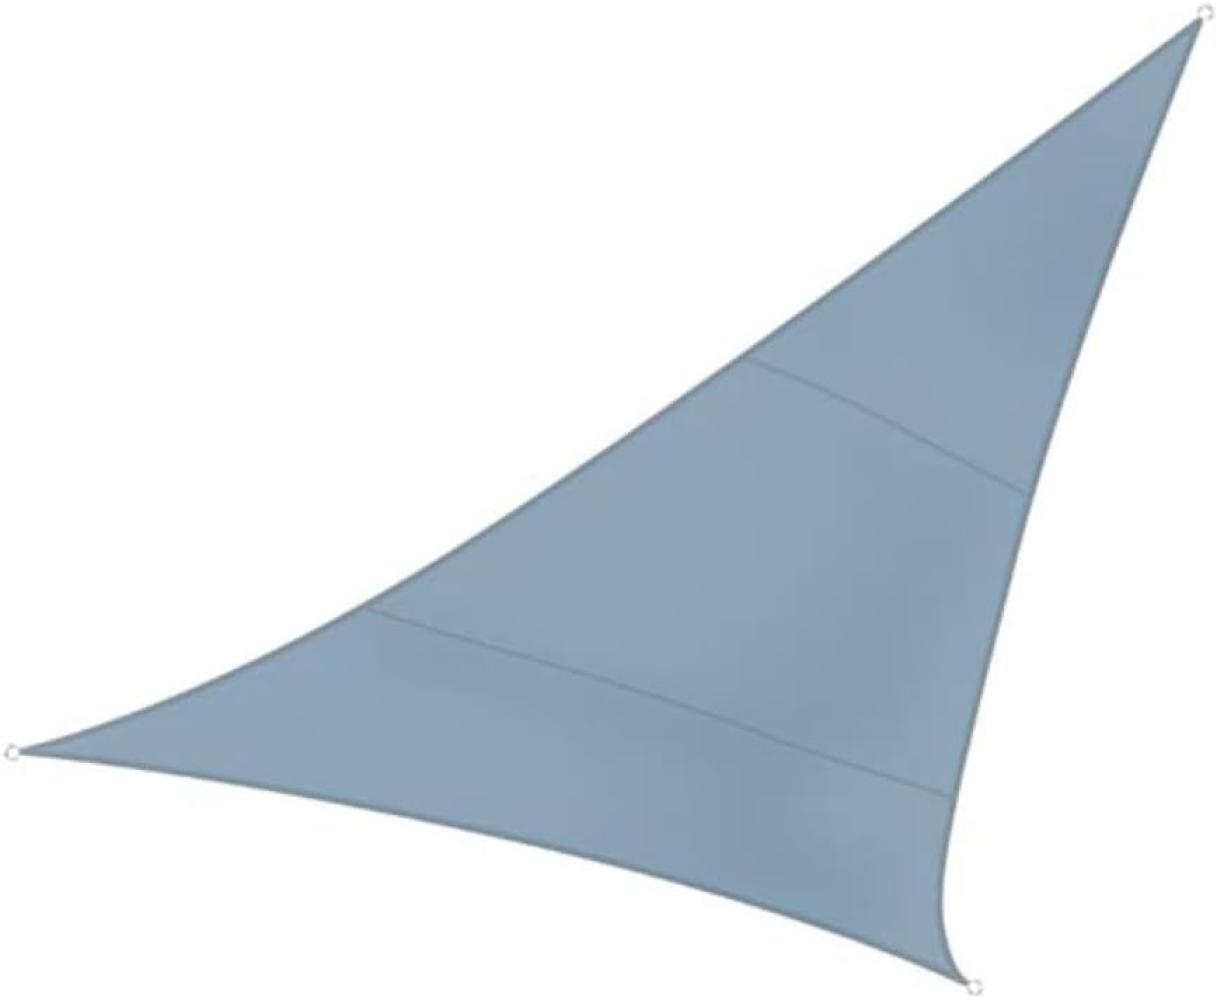 Sonnensegel Dreieck Blaugrau 5m - Sonnenschutzsegel für Balkon / Terrassensegel Bild 1